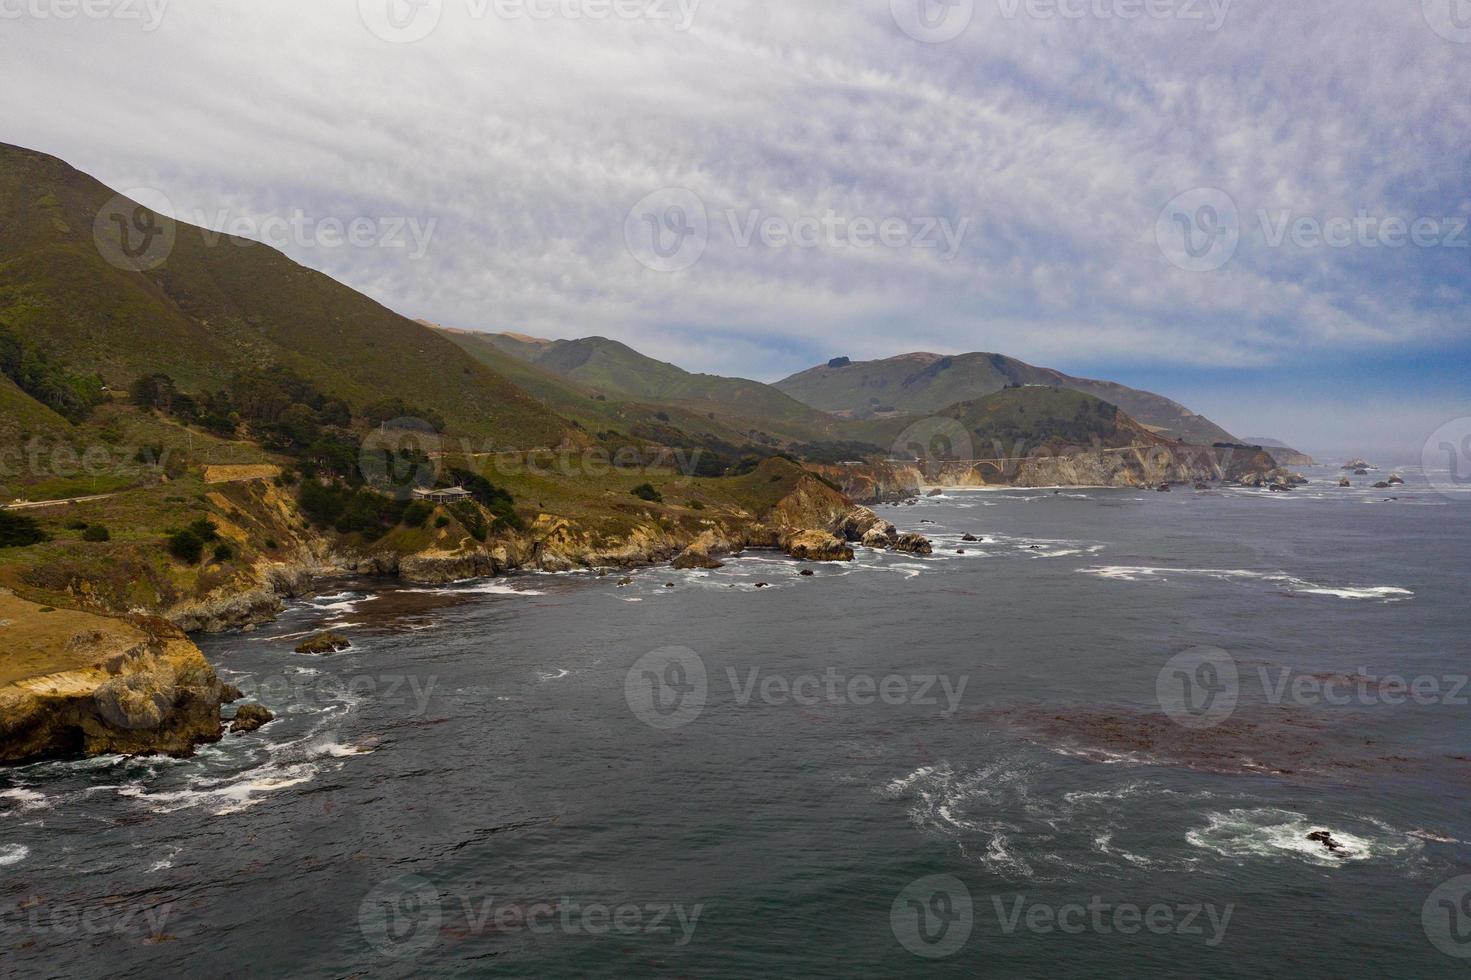 visie van de rotsachtig grote Oceaan kust van garrapata staat park, Californië. foto